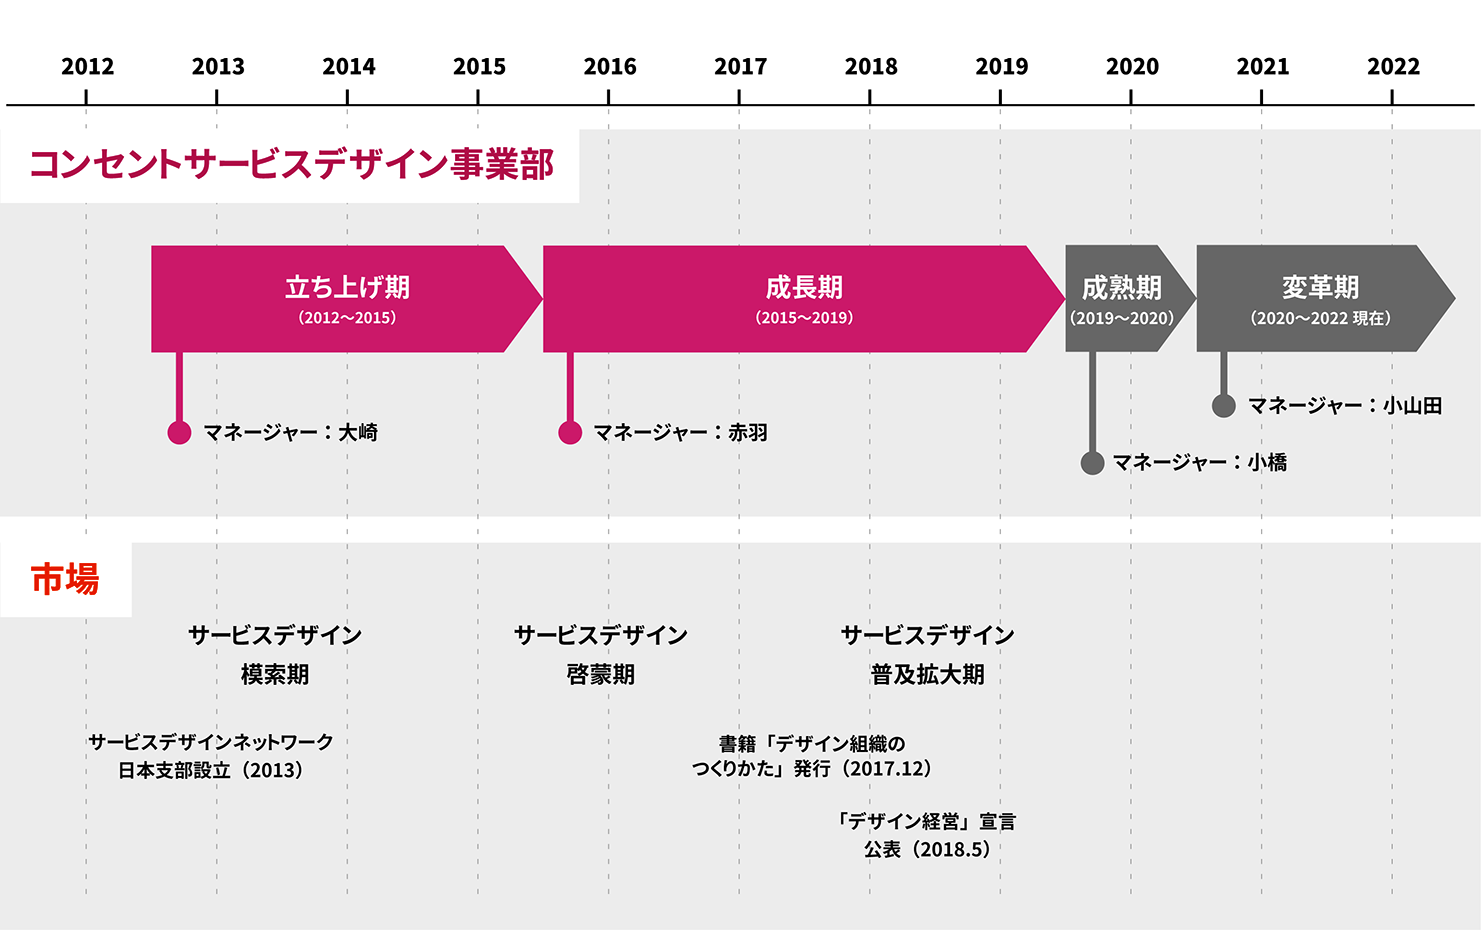 コンセントのサービスデザイン事業部の変遷図。2012年から2015年を立ち上げ期、2015年から2019年を成長期、2019年から2020年を成熟期、2020年から2022年を変革期としている。